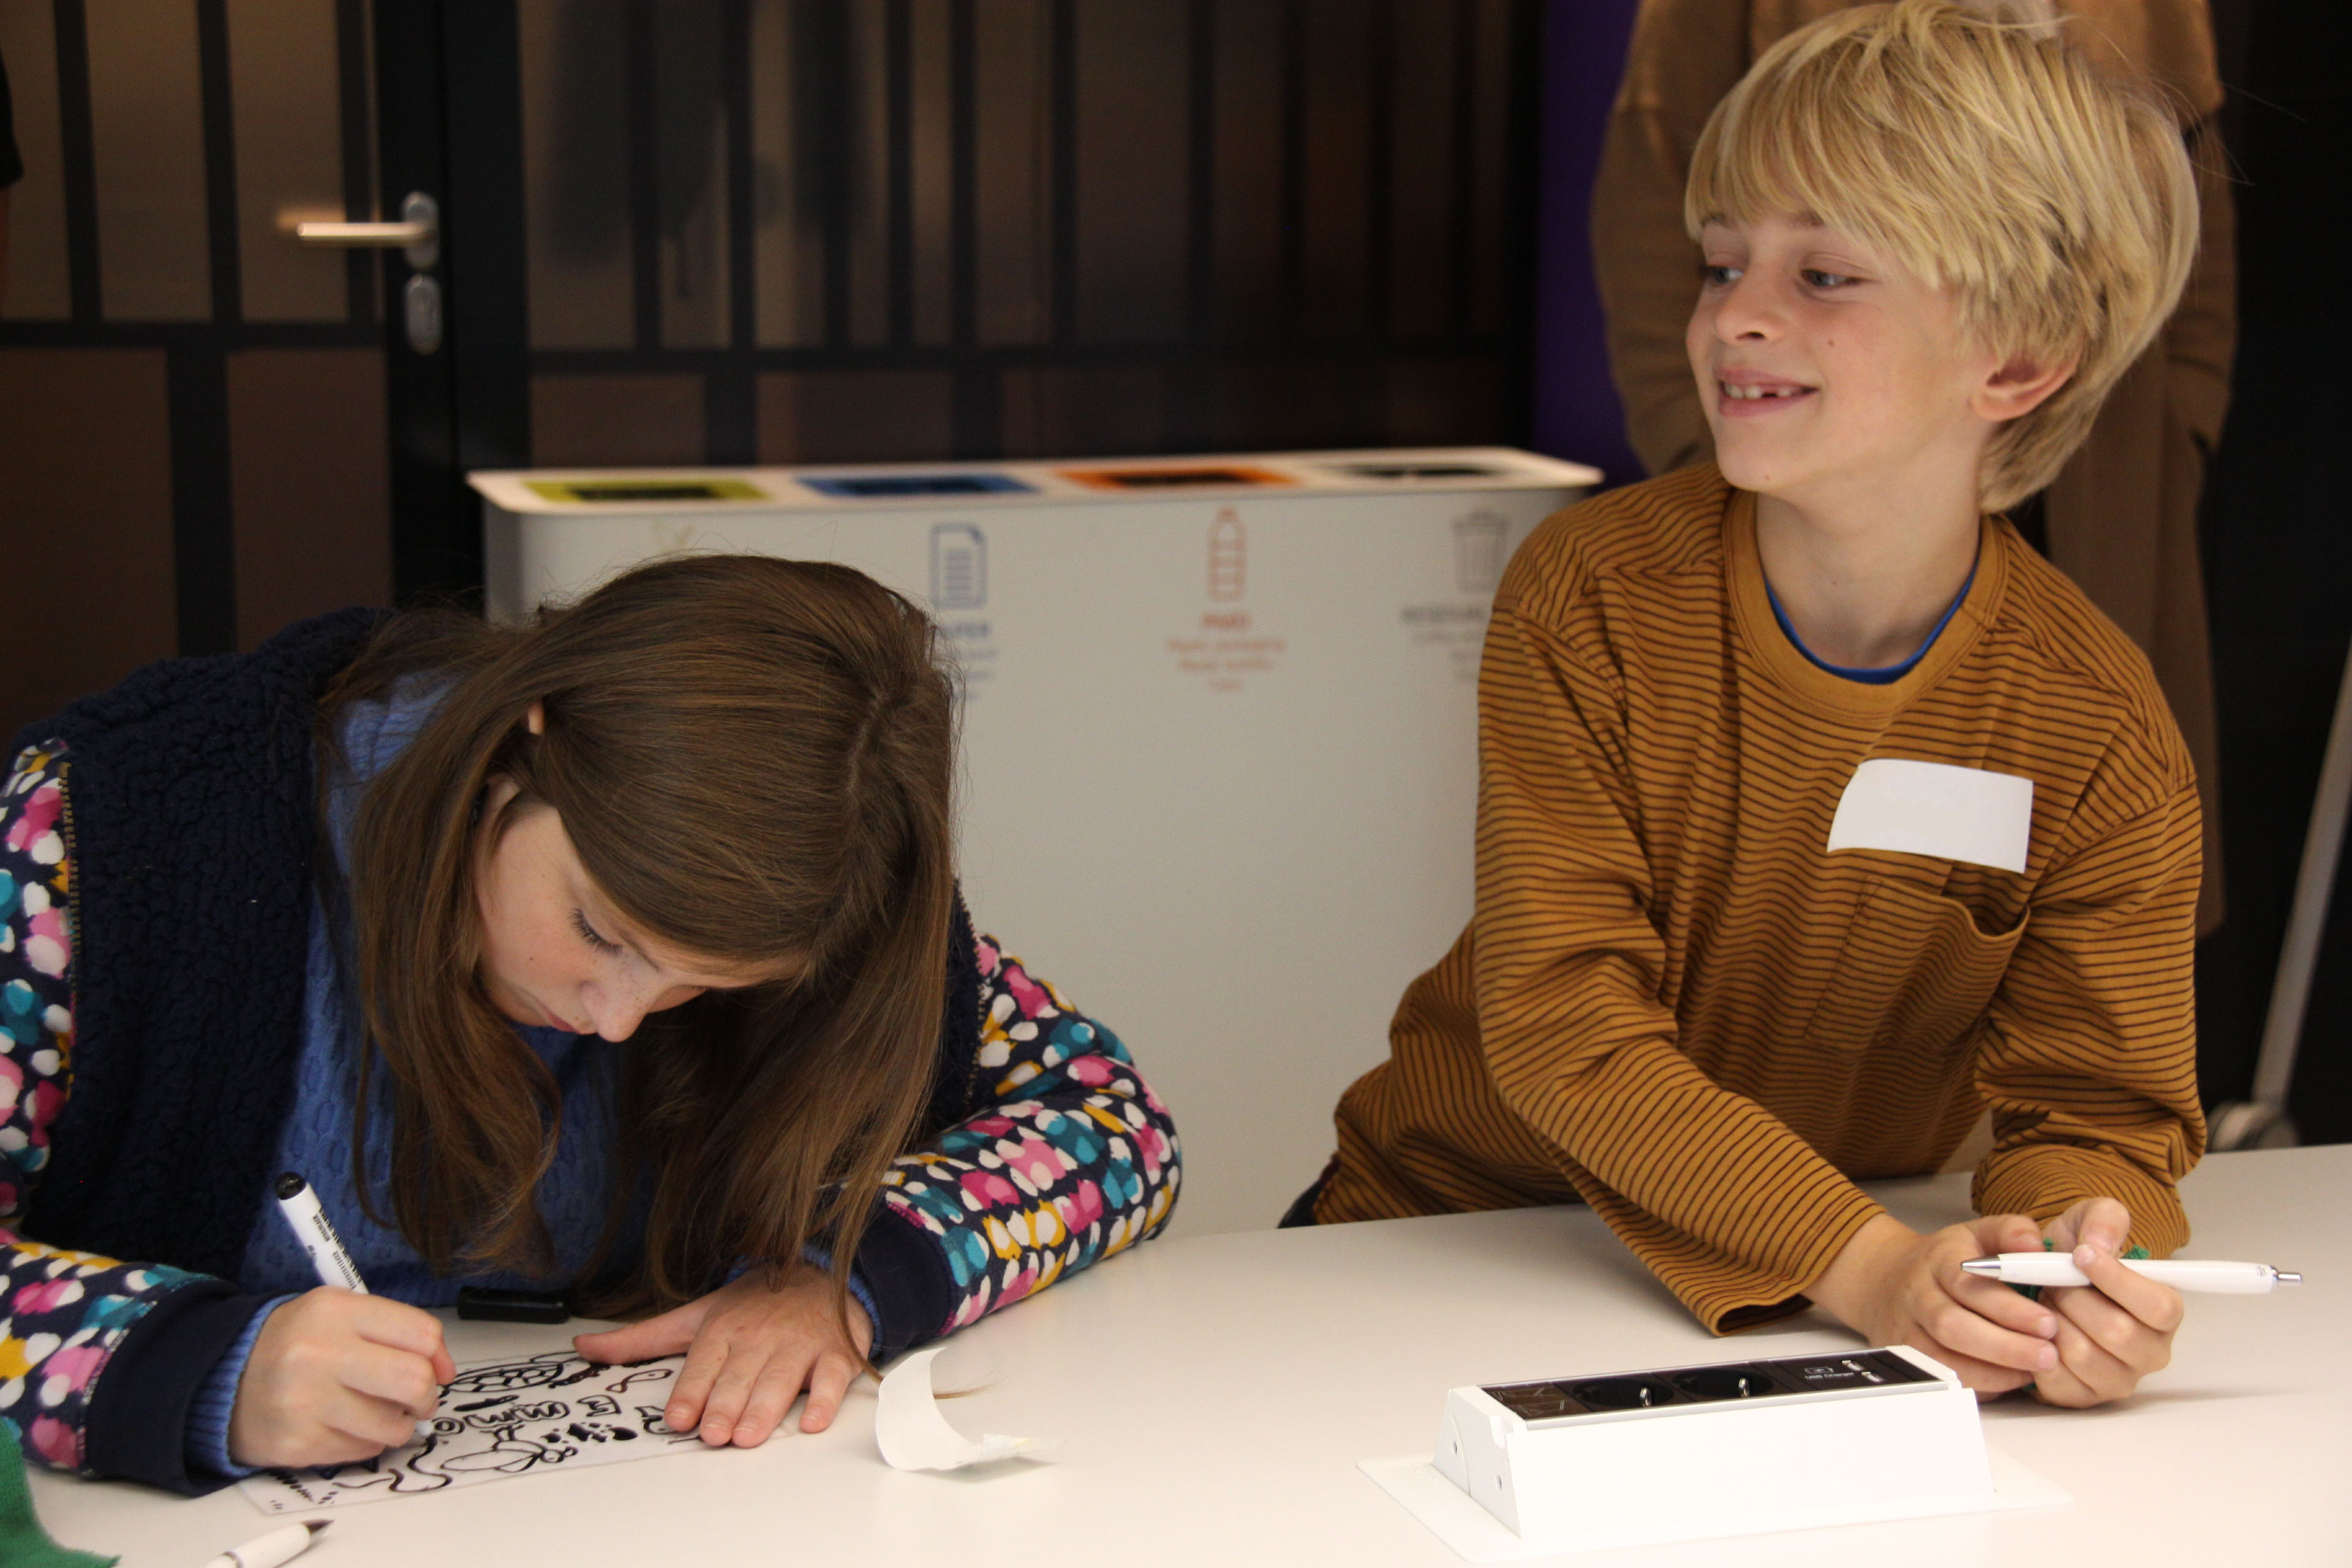 Een meisje tekent op papier en een jongen glimlacht